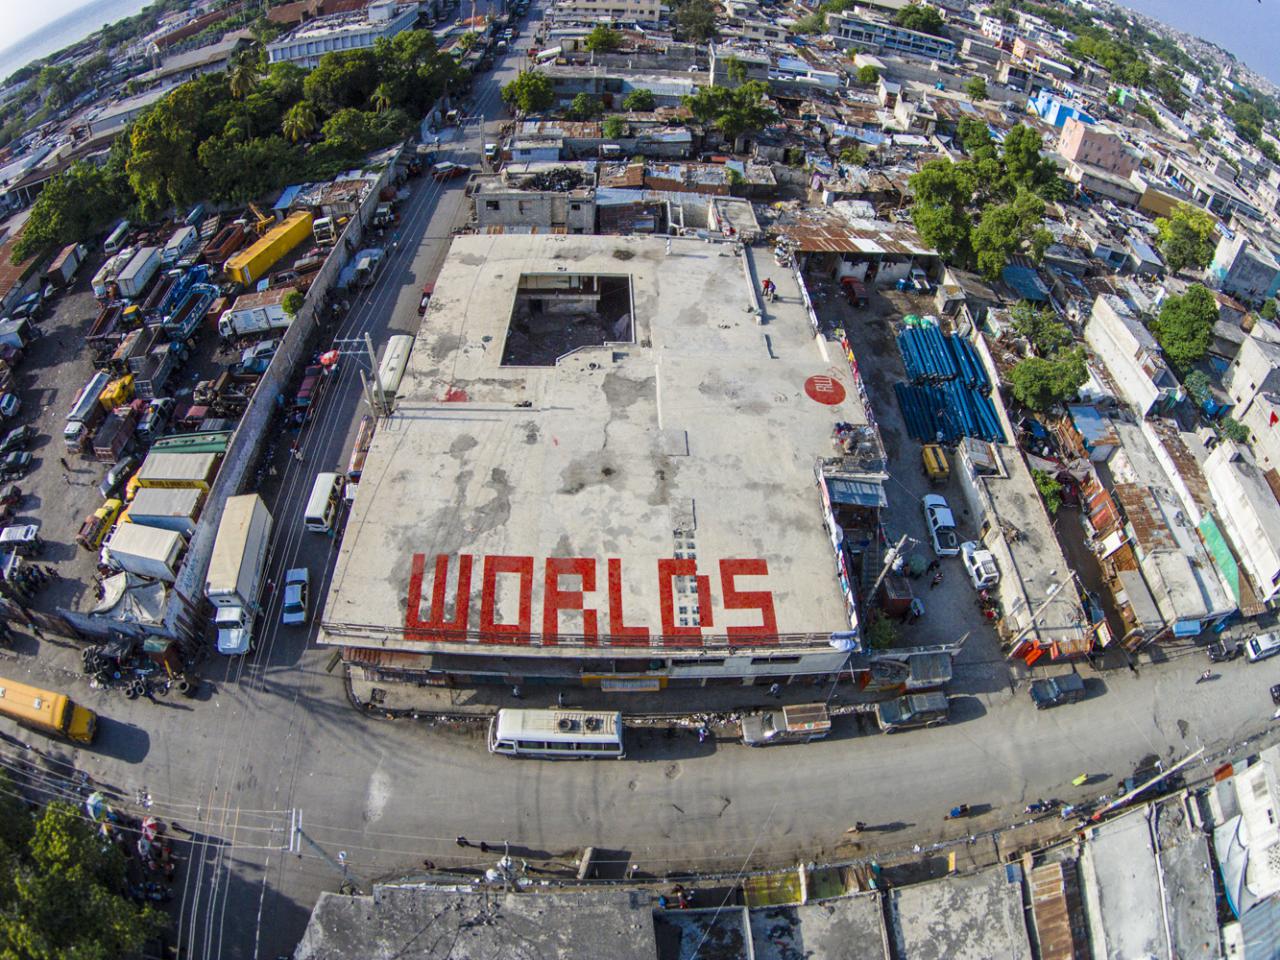 Auf einem Dach steht in roten Buchstaben »WORLDS«